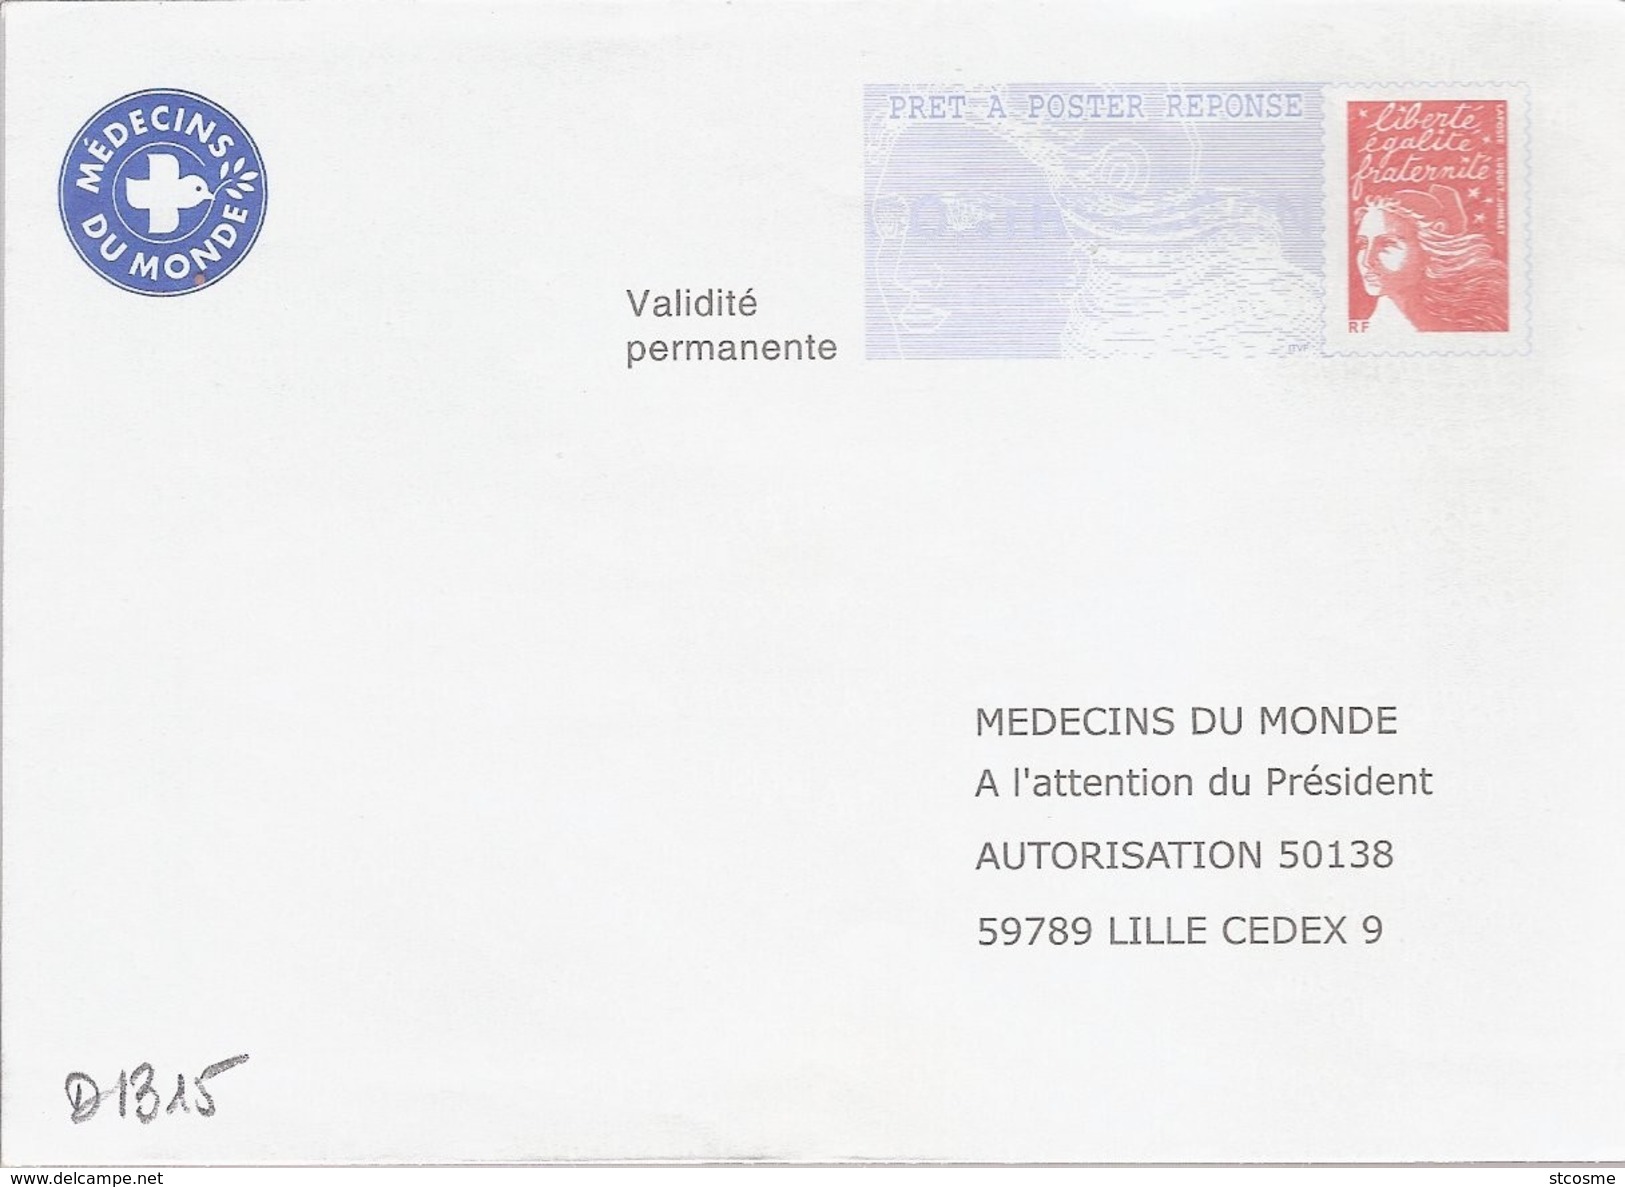 D1315 Entier / Stationery / PSE - PAP Réponse Luquet : Médecins Du Monde -agrément N° 0209116 - Prêts-à-poster:Answer/Luquet